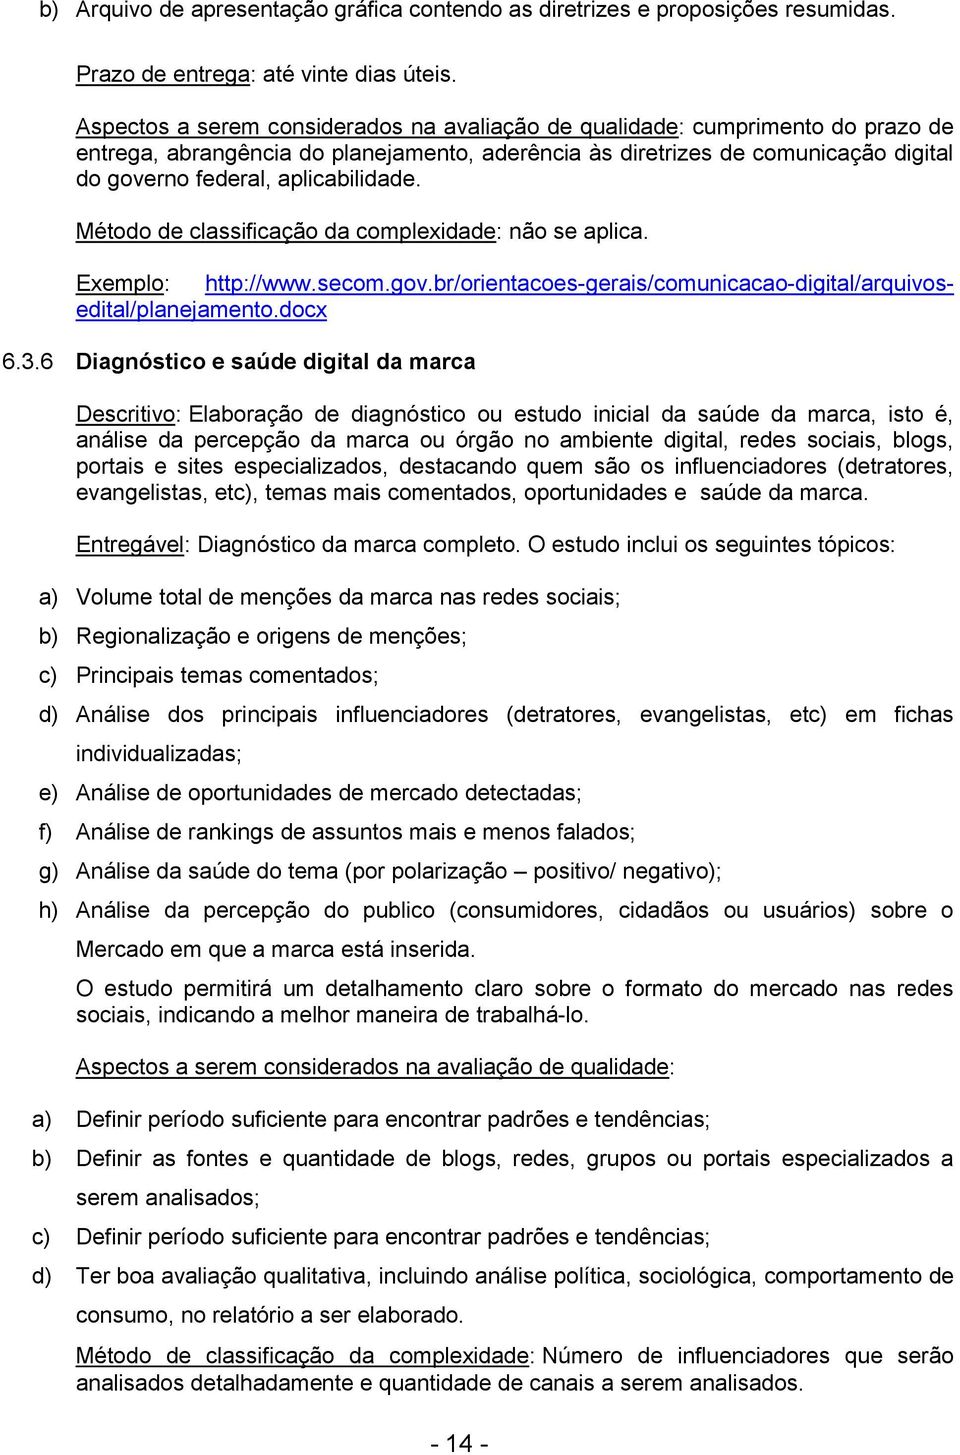 aplicabilidade. Exemplo: http://www.secom.gov.br/orientacoes-gerais/comunicacao-digital/arquivosedital/planejamento.docx 6.3.